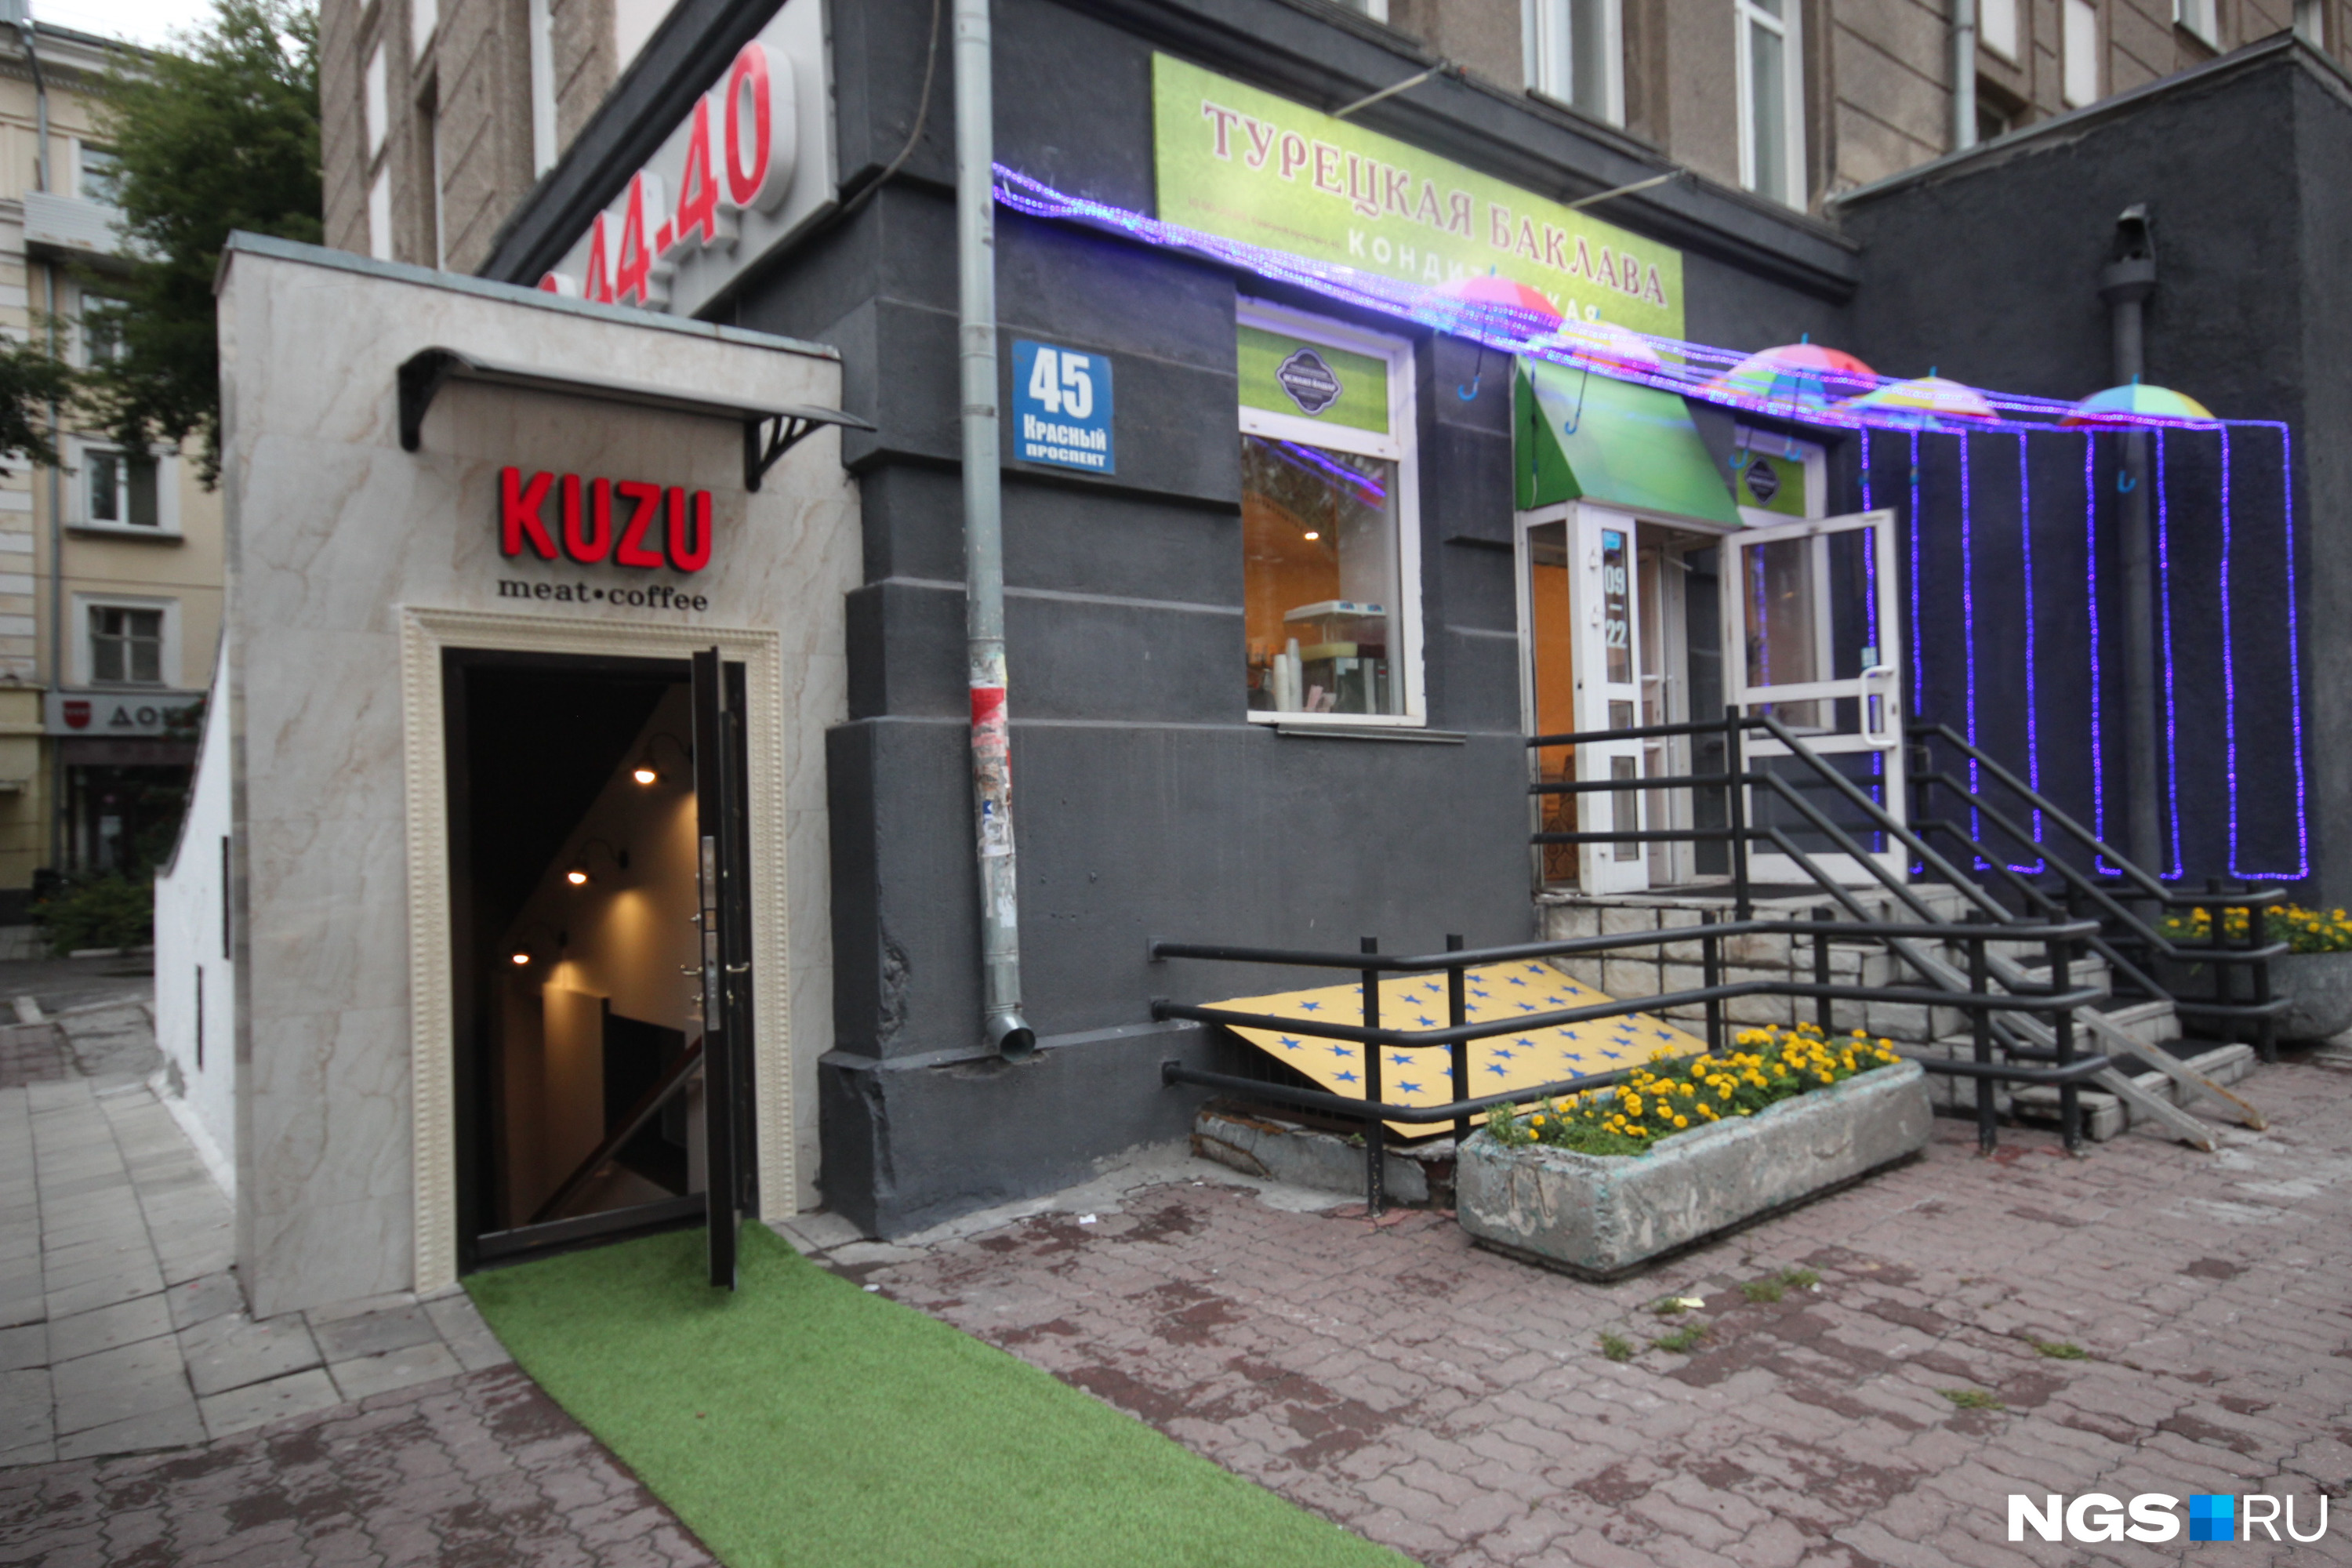 KUZU составило компанию открывшейся здесь ранее турецкой кондитерской